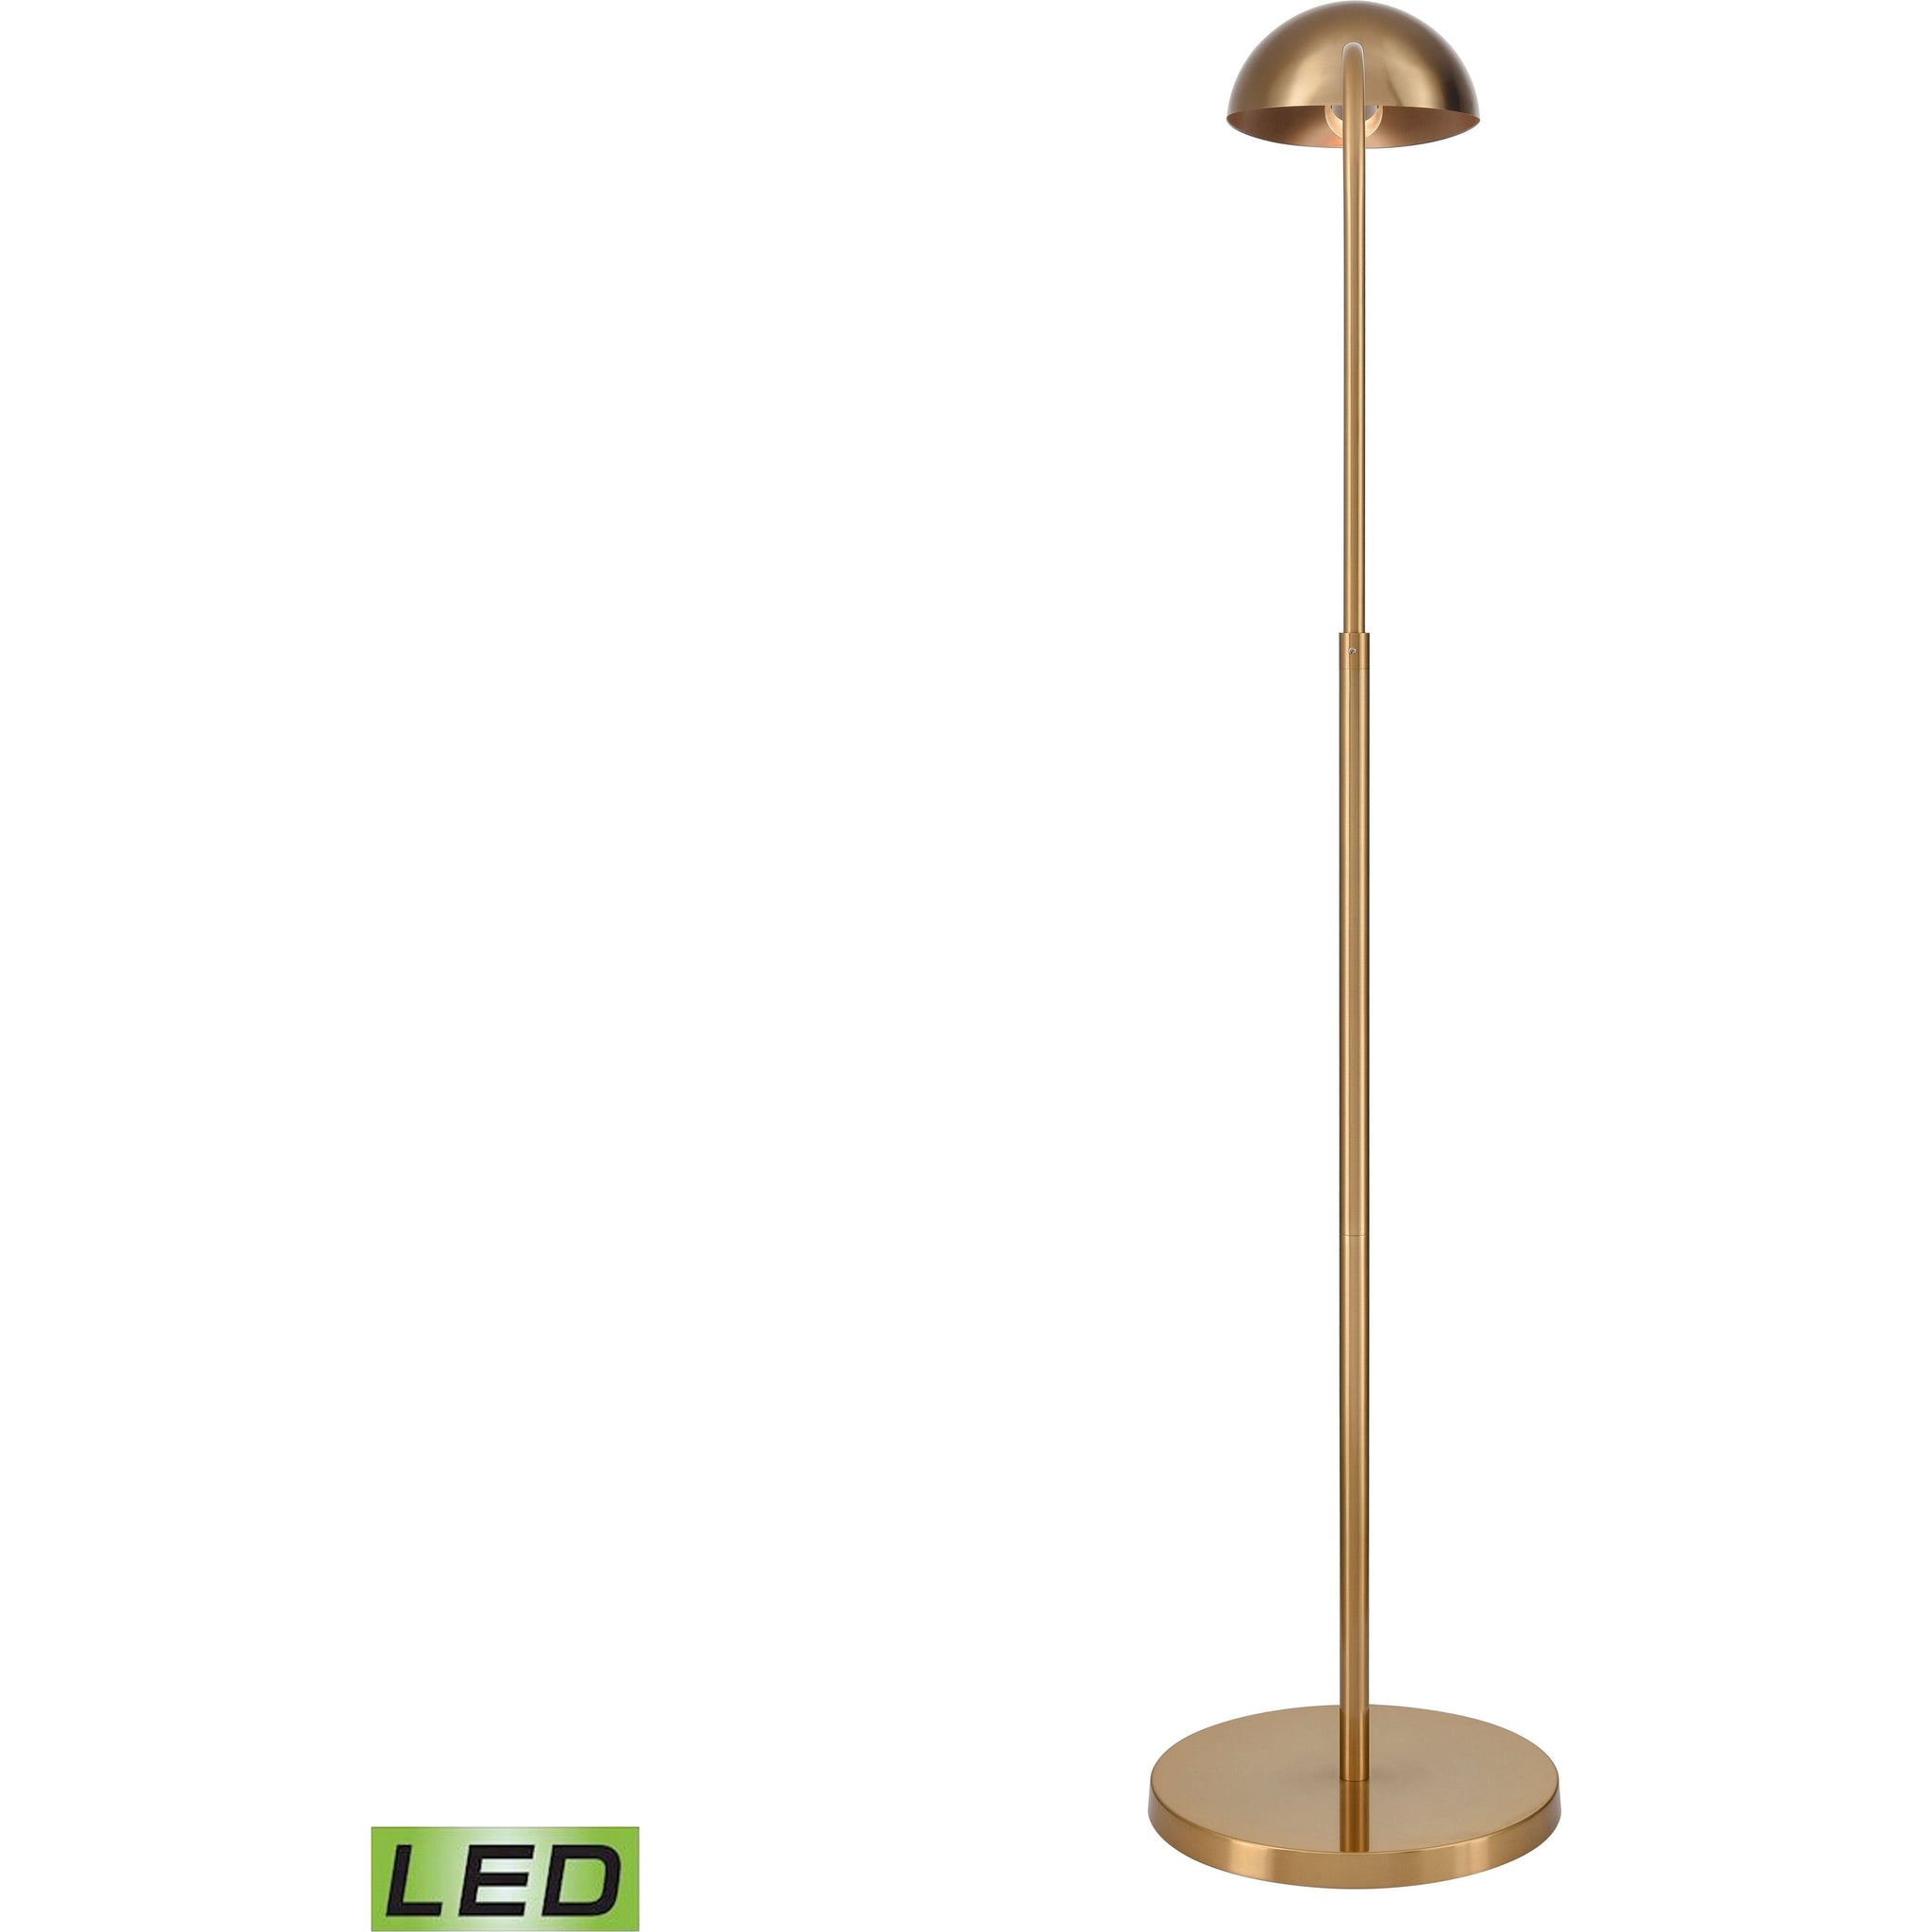 Alda 53.5" High 1-Light Floor Lamp